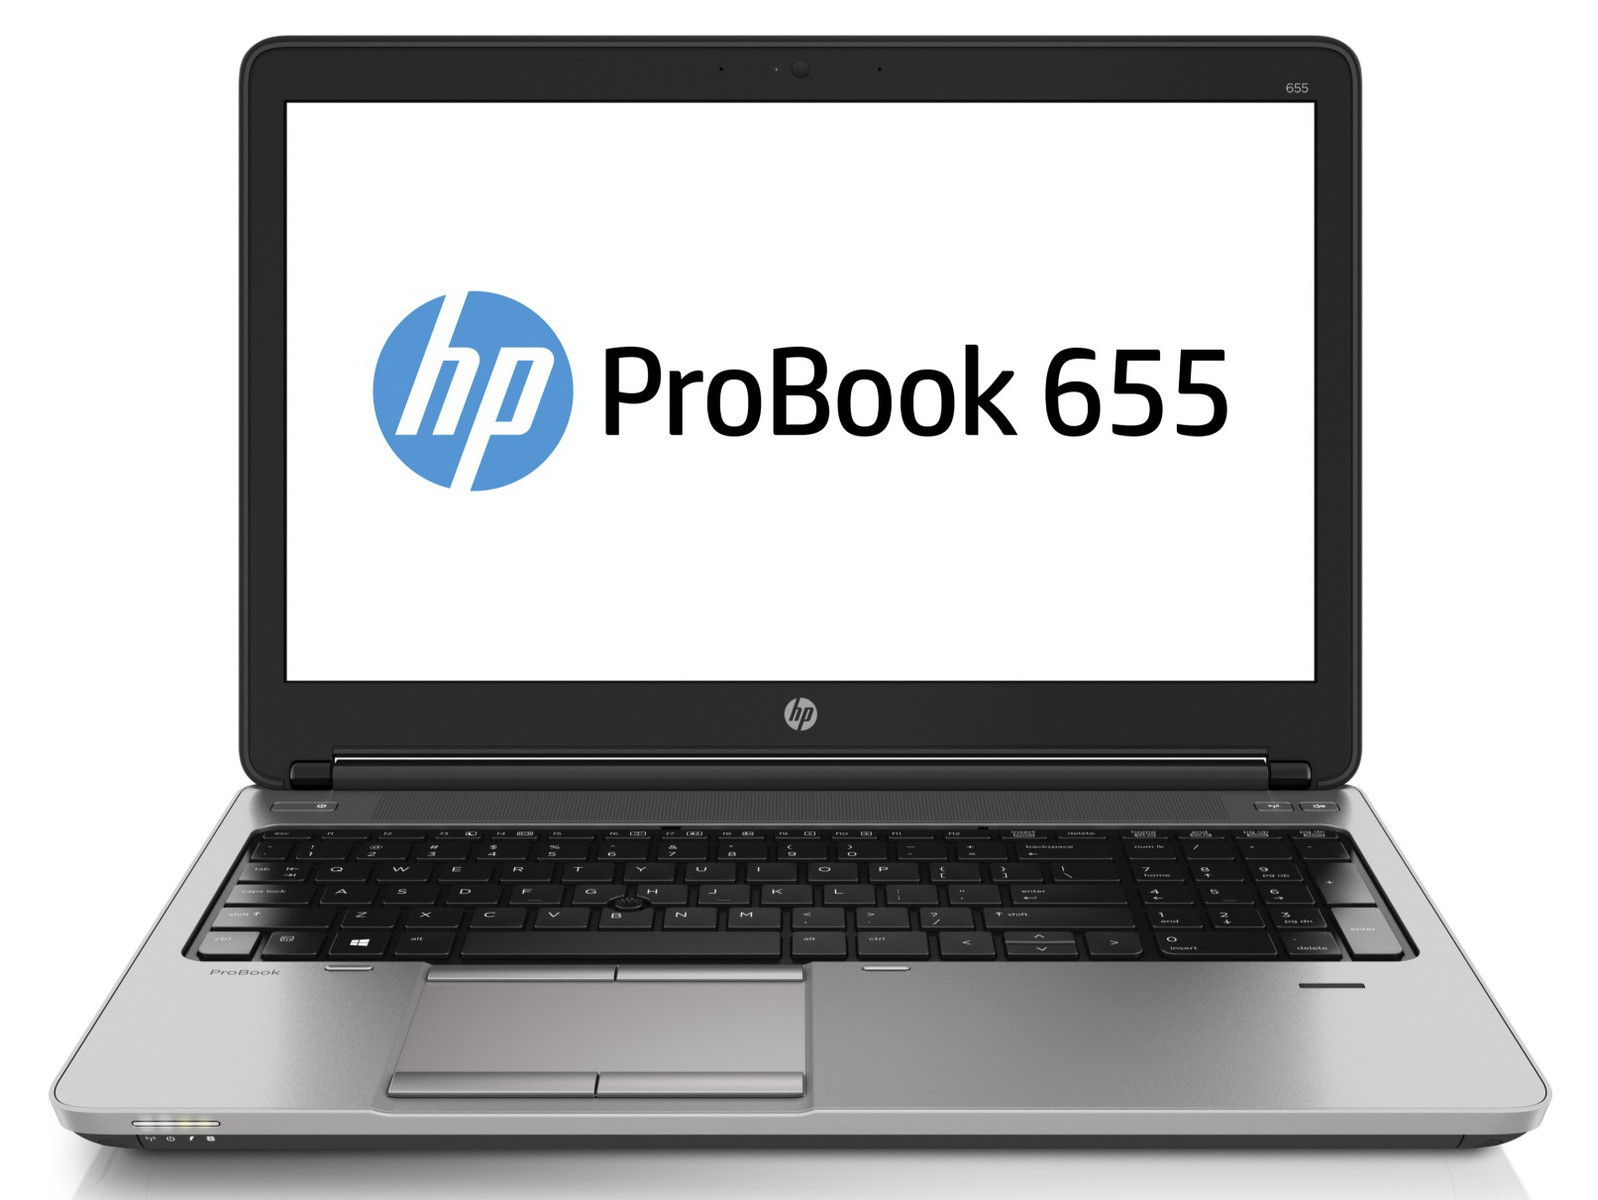 Laptop HP ProBook 655 G1, AMD A10-8700B 1.80GHz, 4GB DDR3, 320GB SATA, DVD-RW, 15.6 Inch